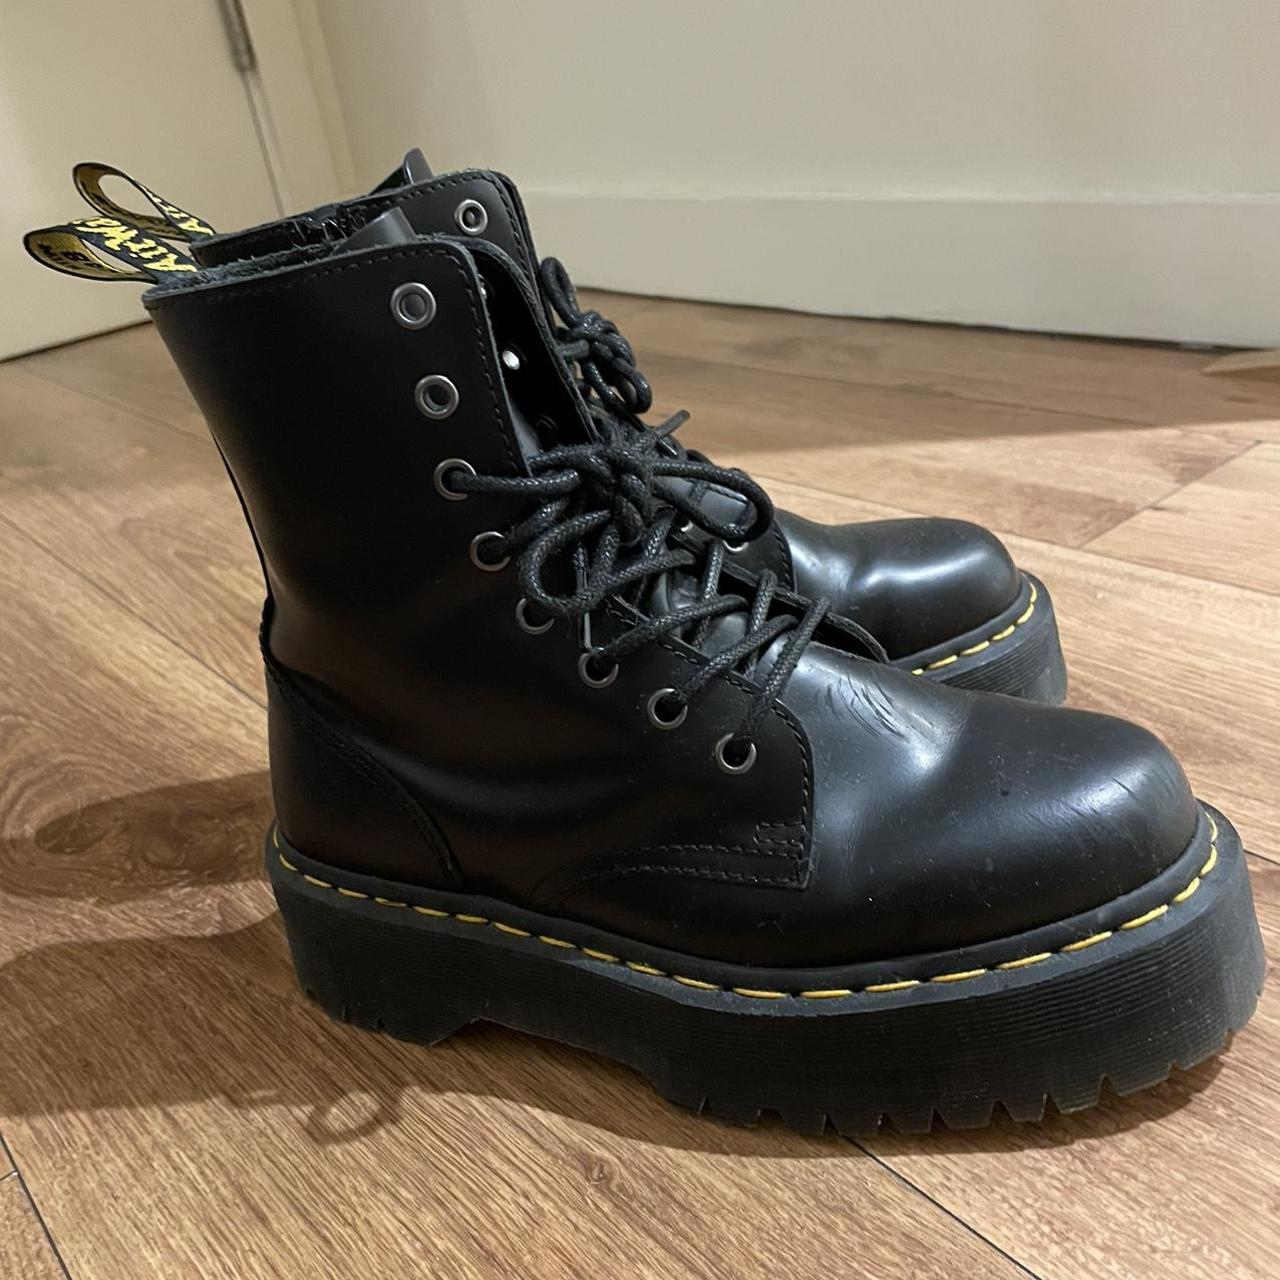 Jadon smooth leather platform doc marten boots in... - Depop